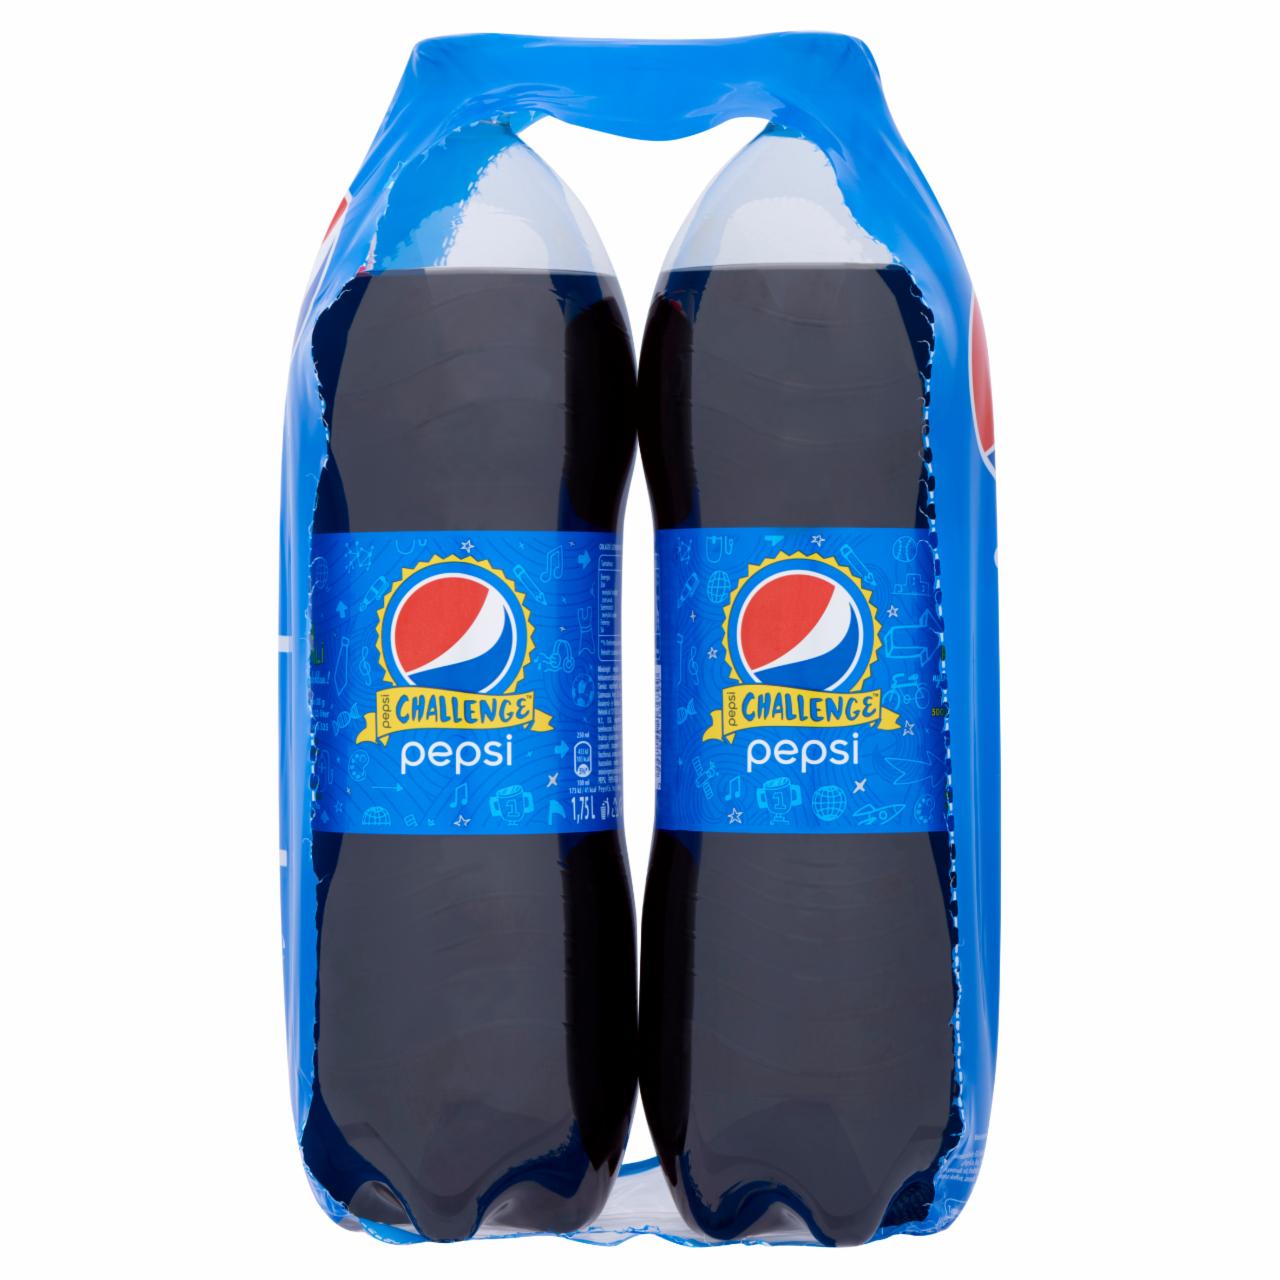 Képek - Pepsi colaízű szénsavas üdítőital 2 x 1,75 l